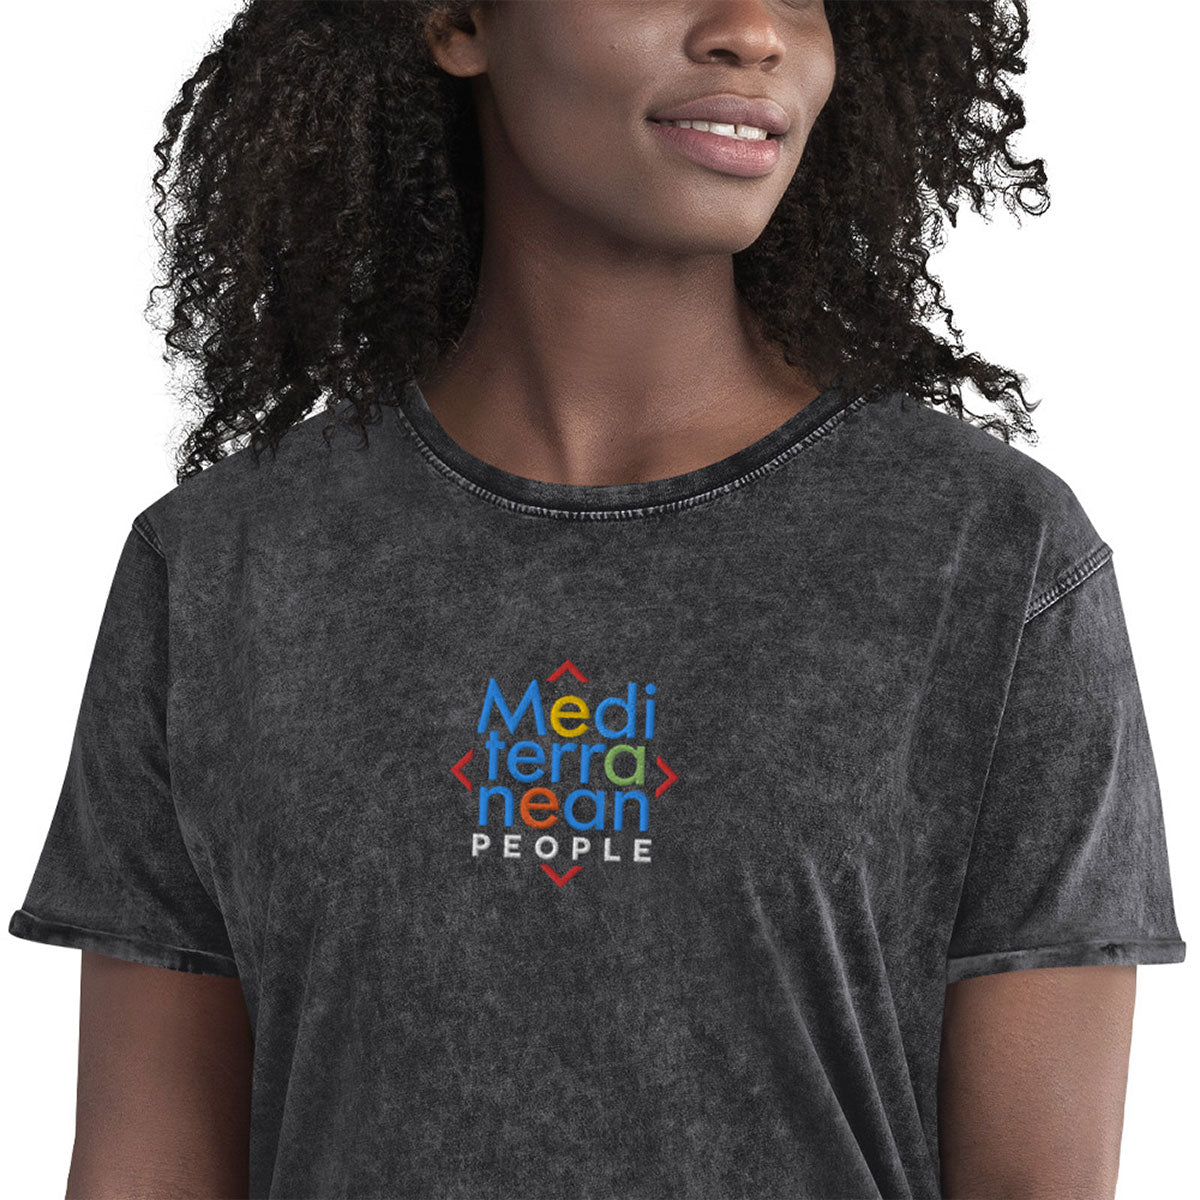 LIKELELE world · Camiseta m/corta·MEDITERRANEAN PEOPLE·Mujer/Unisex · Medium·Black-372c2f